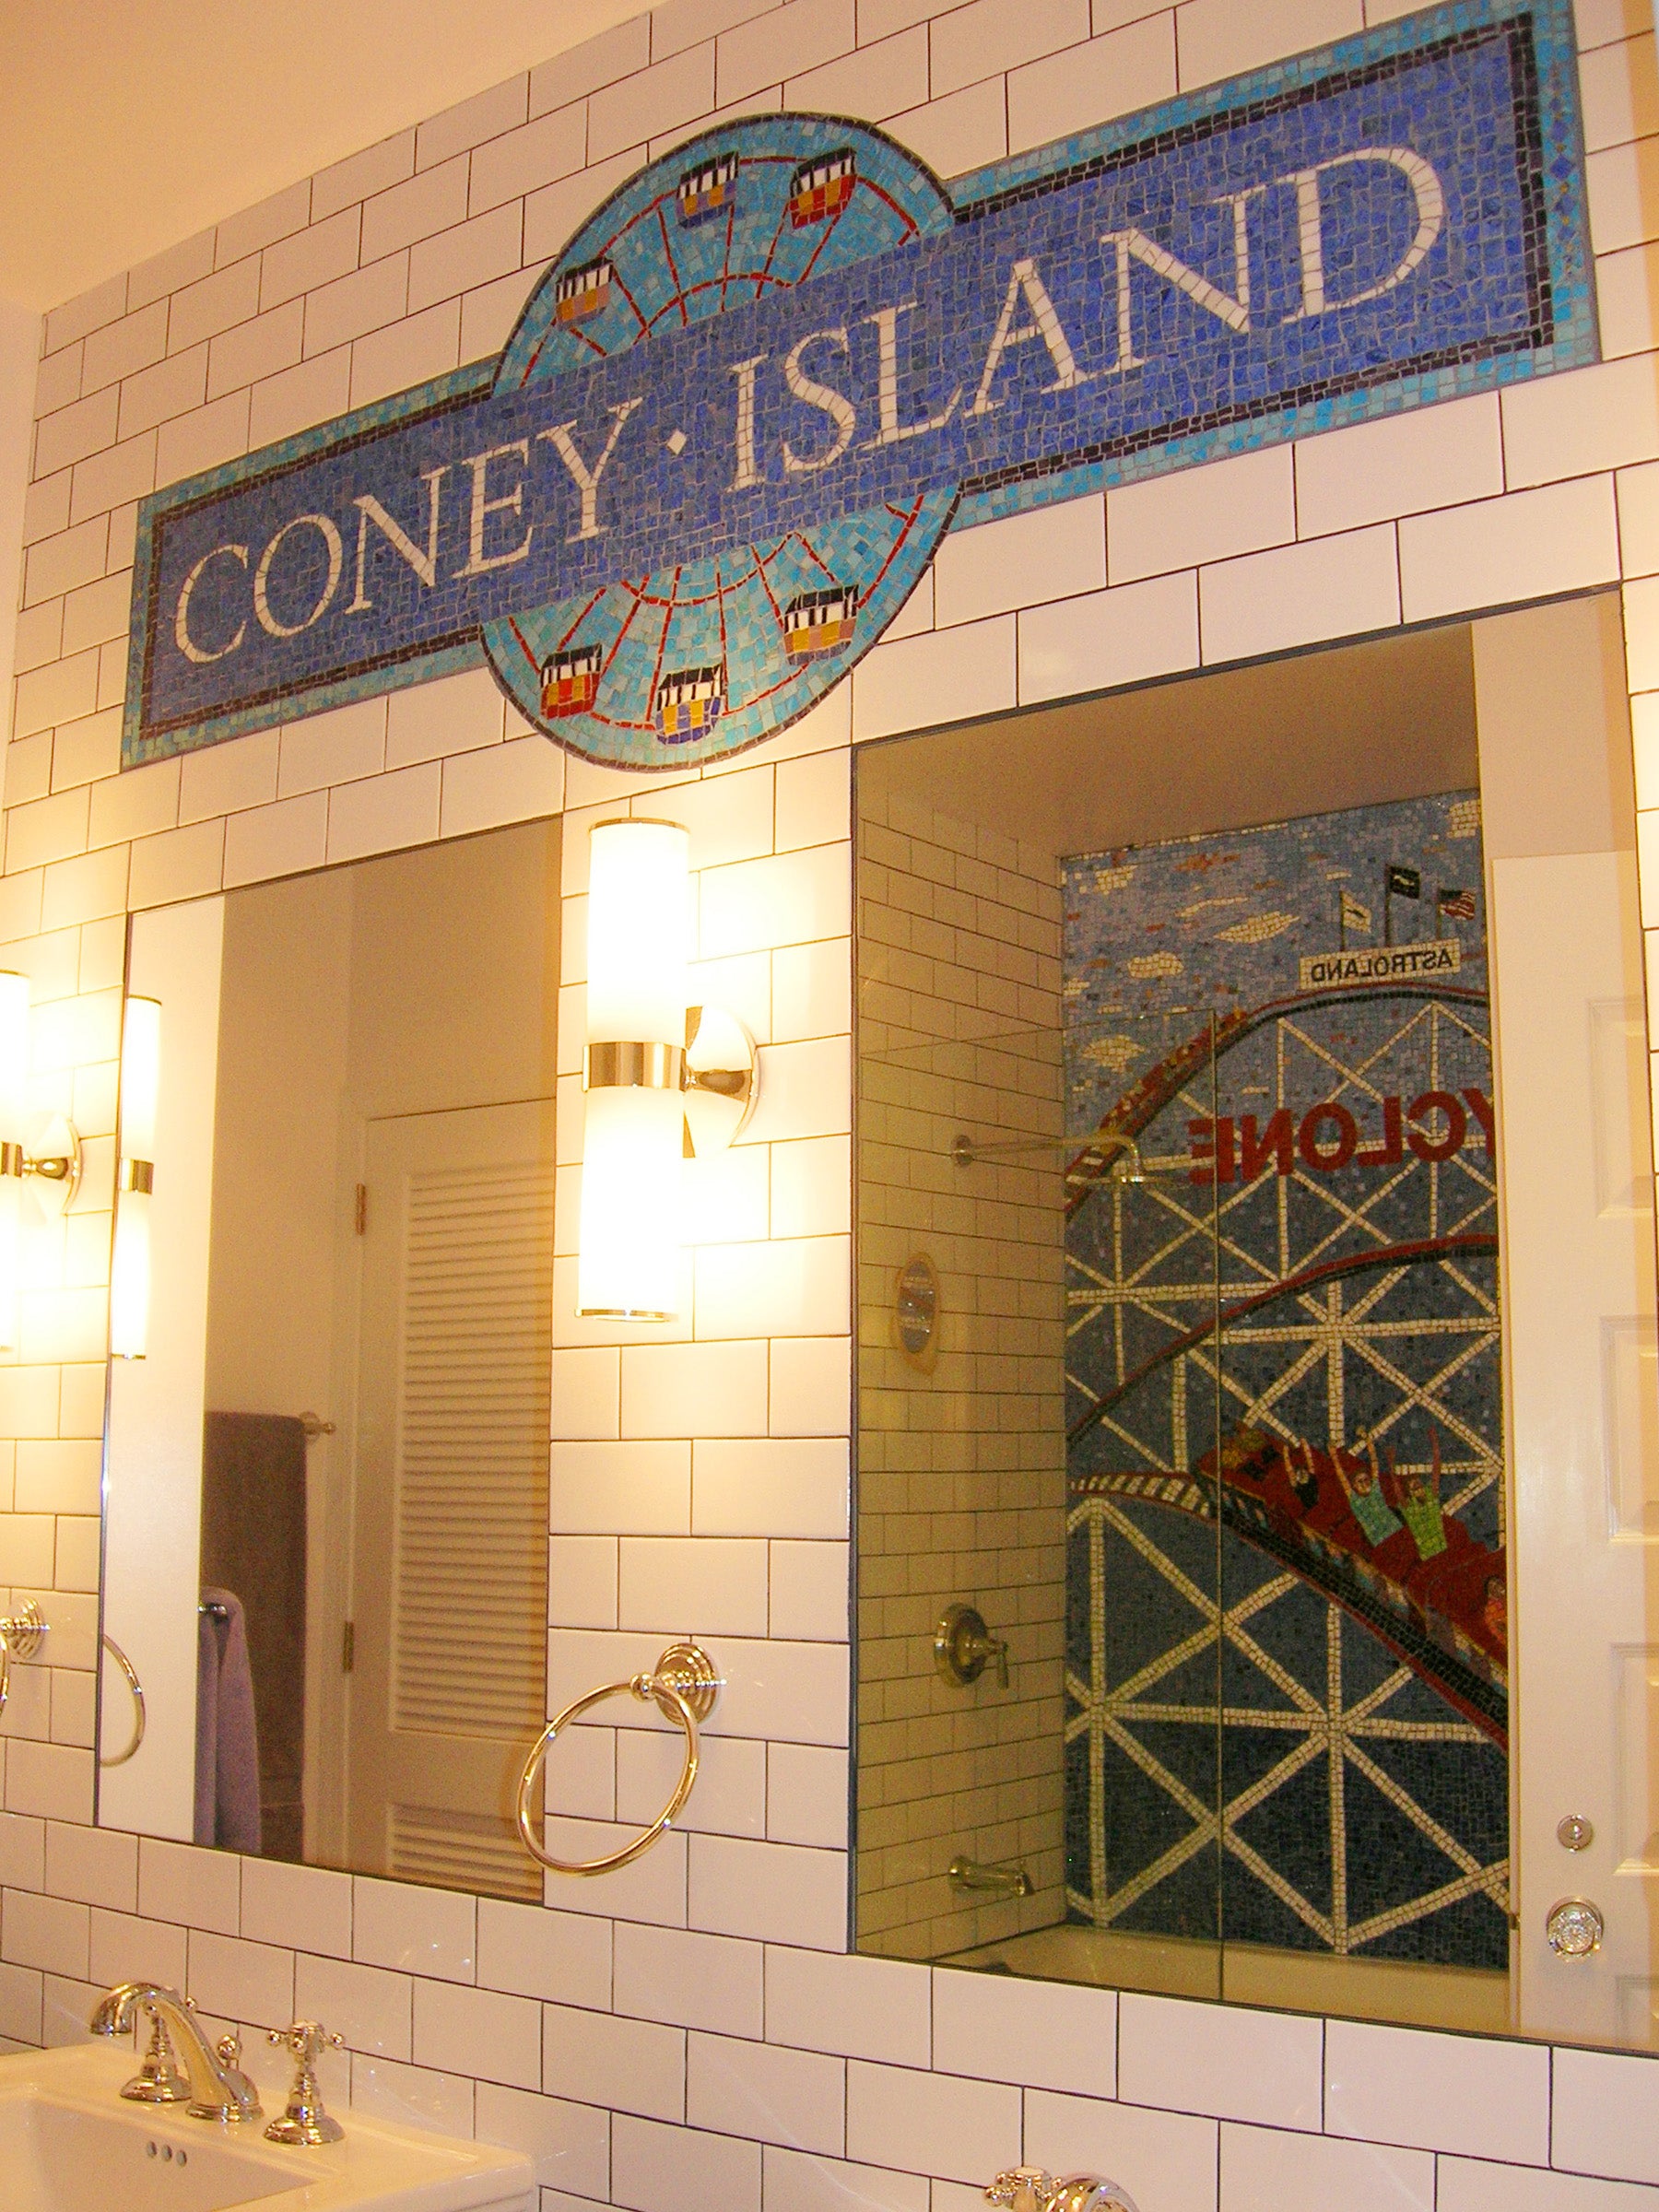  Coney Island Inspired Mosaic by Cathleen Newsham